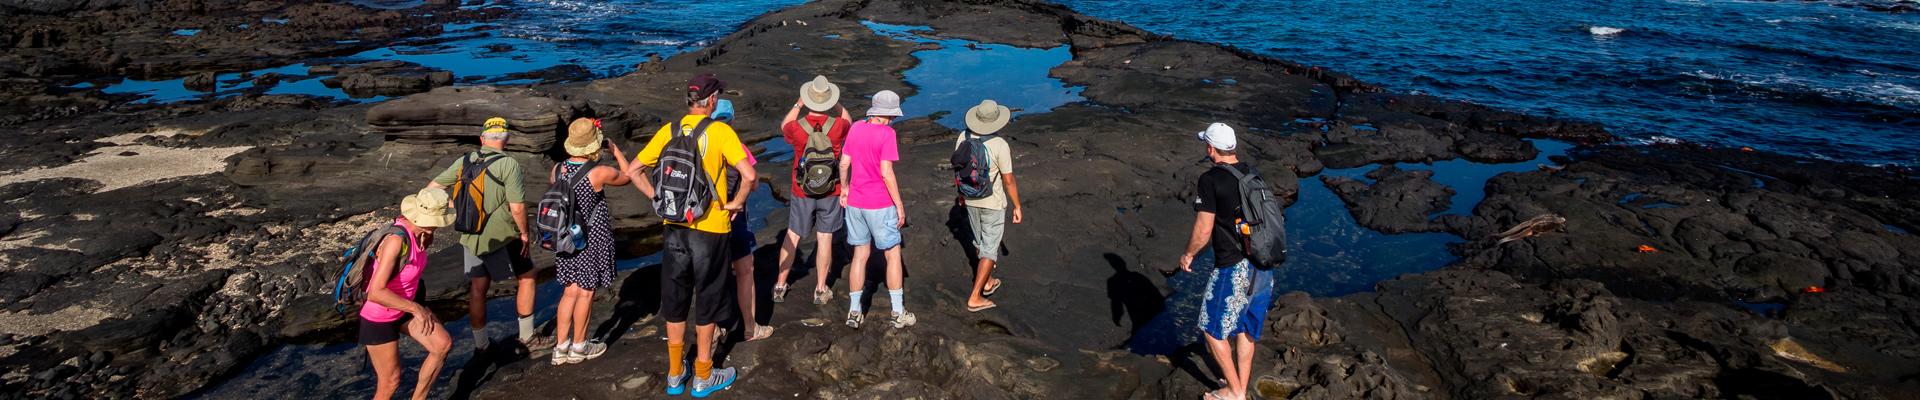 Tours en Galapagos | Tours de 1 Día